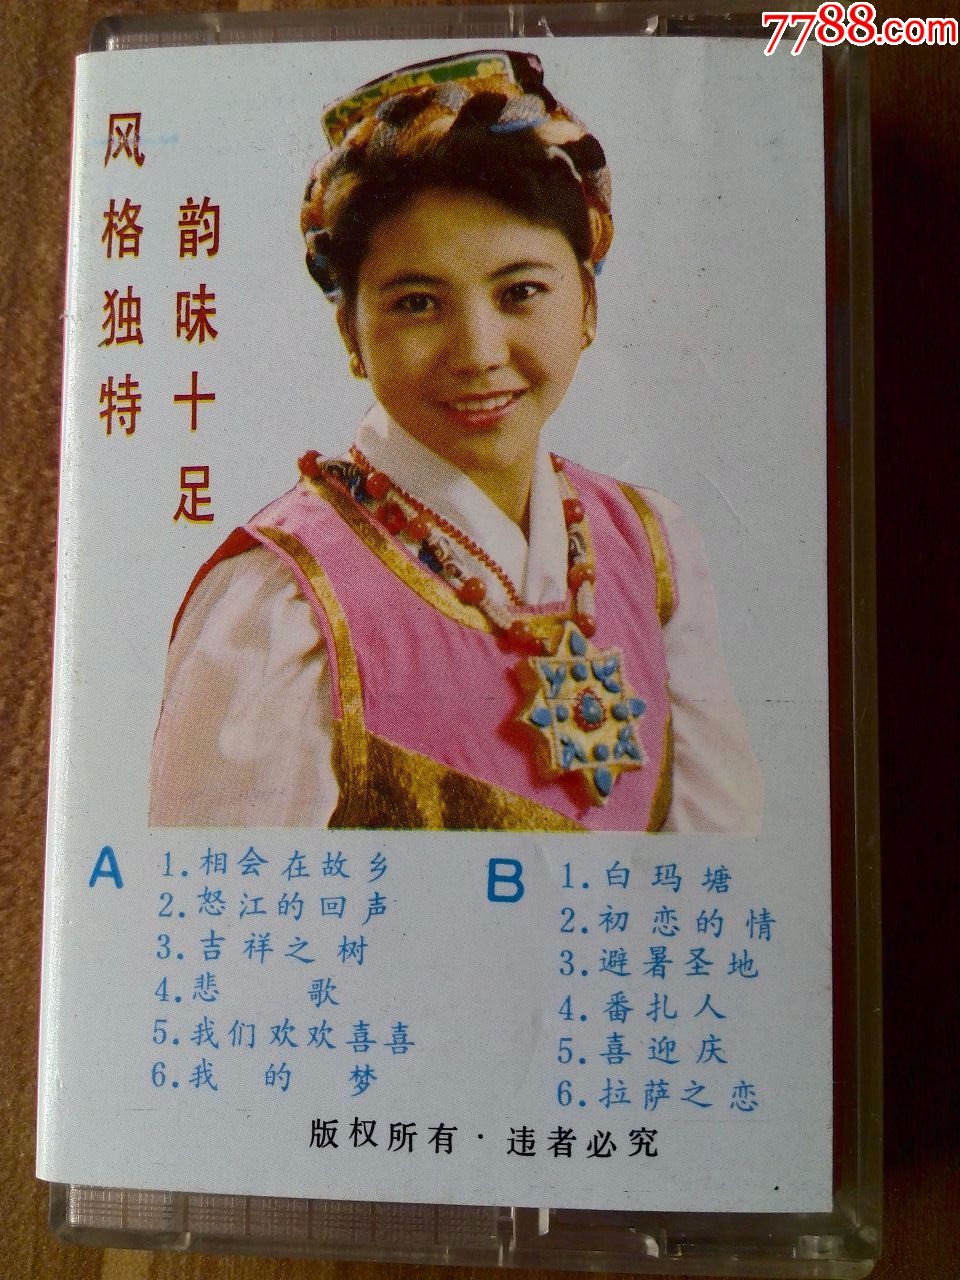 少见磁带,藏族歌手格桑曲珍独唱专辑《白玛塘》